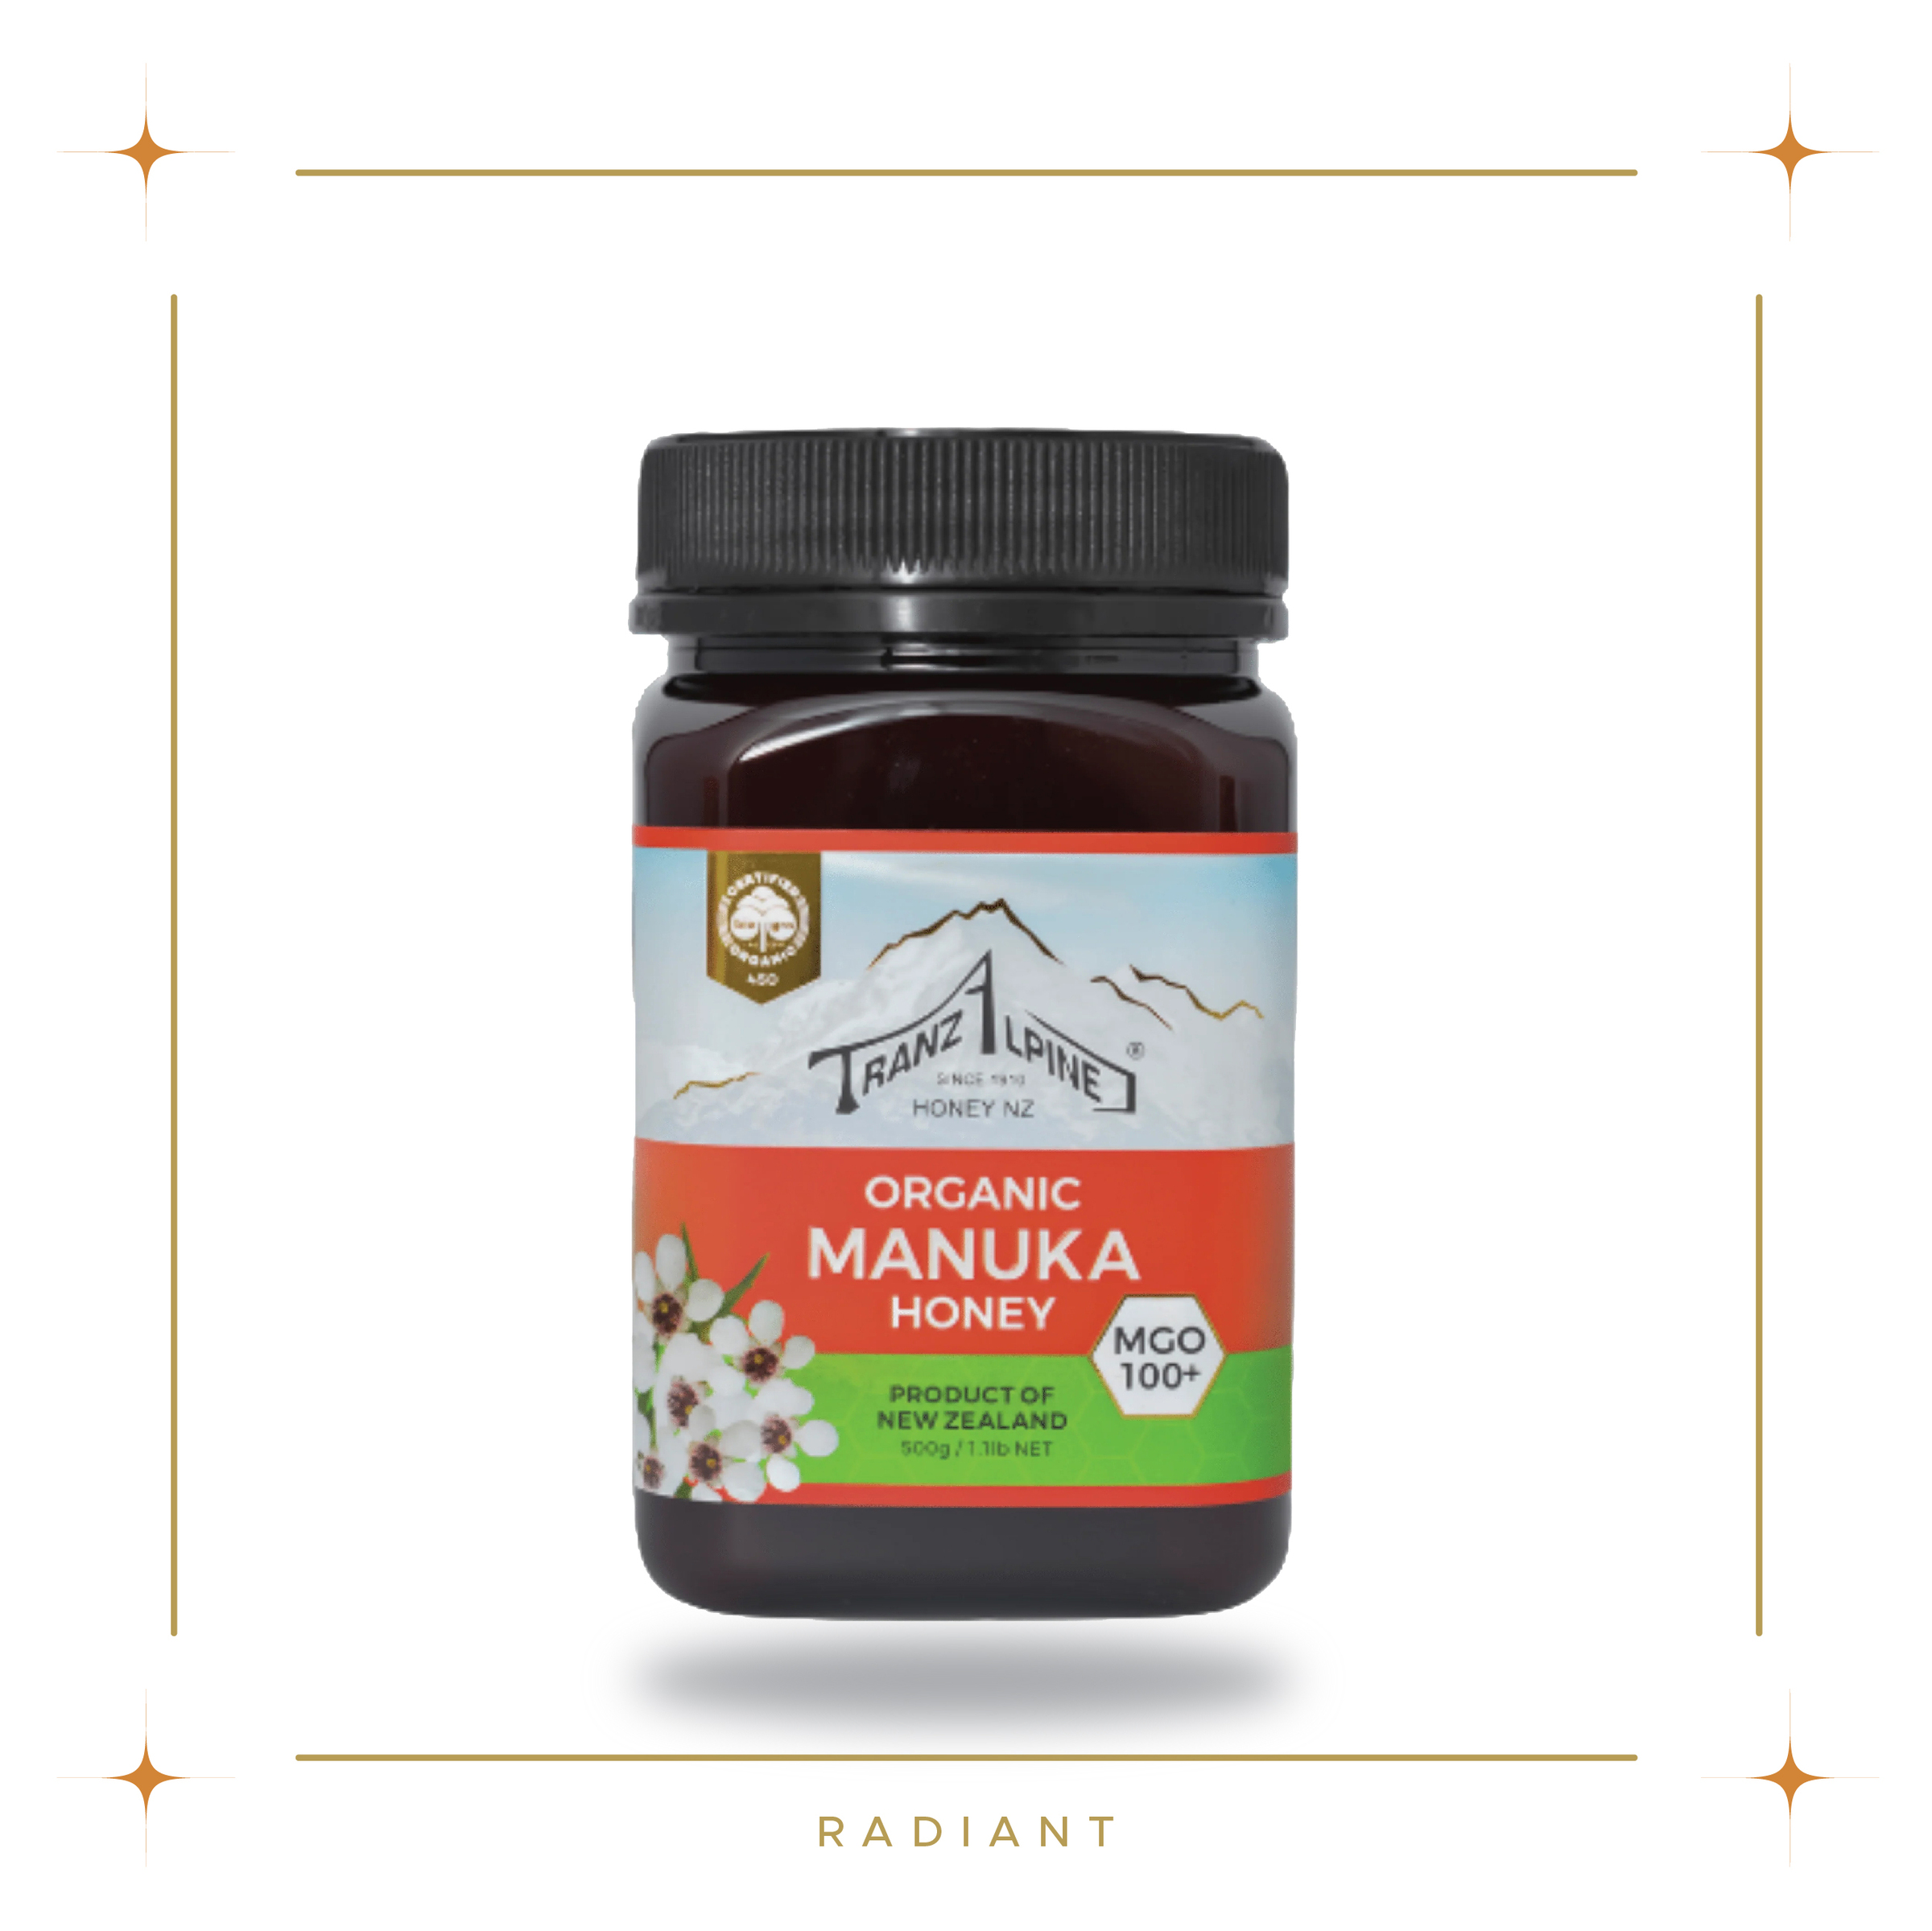 Radiant Product-Honey_Manuka Honey